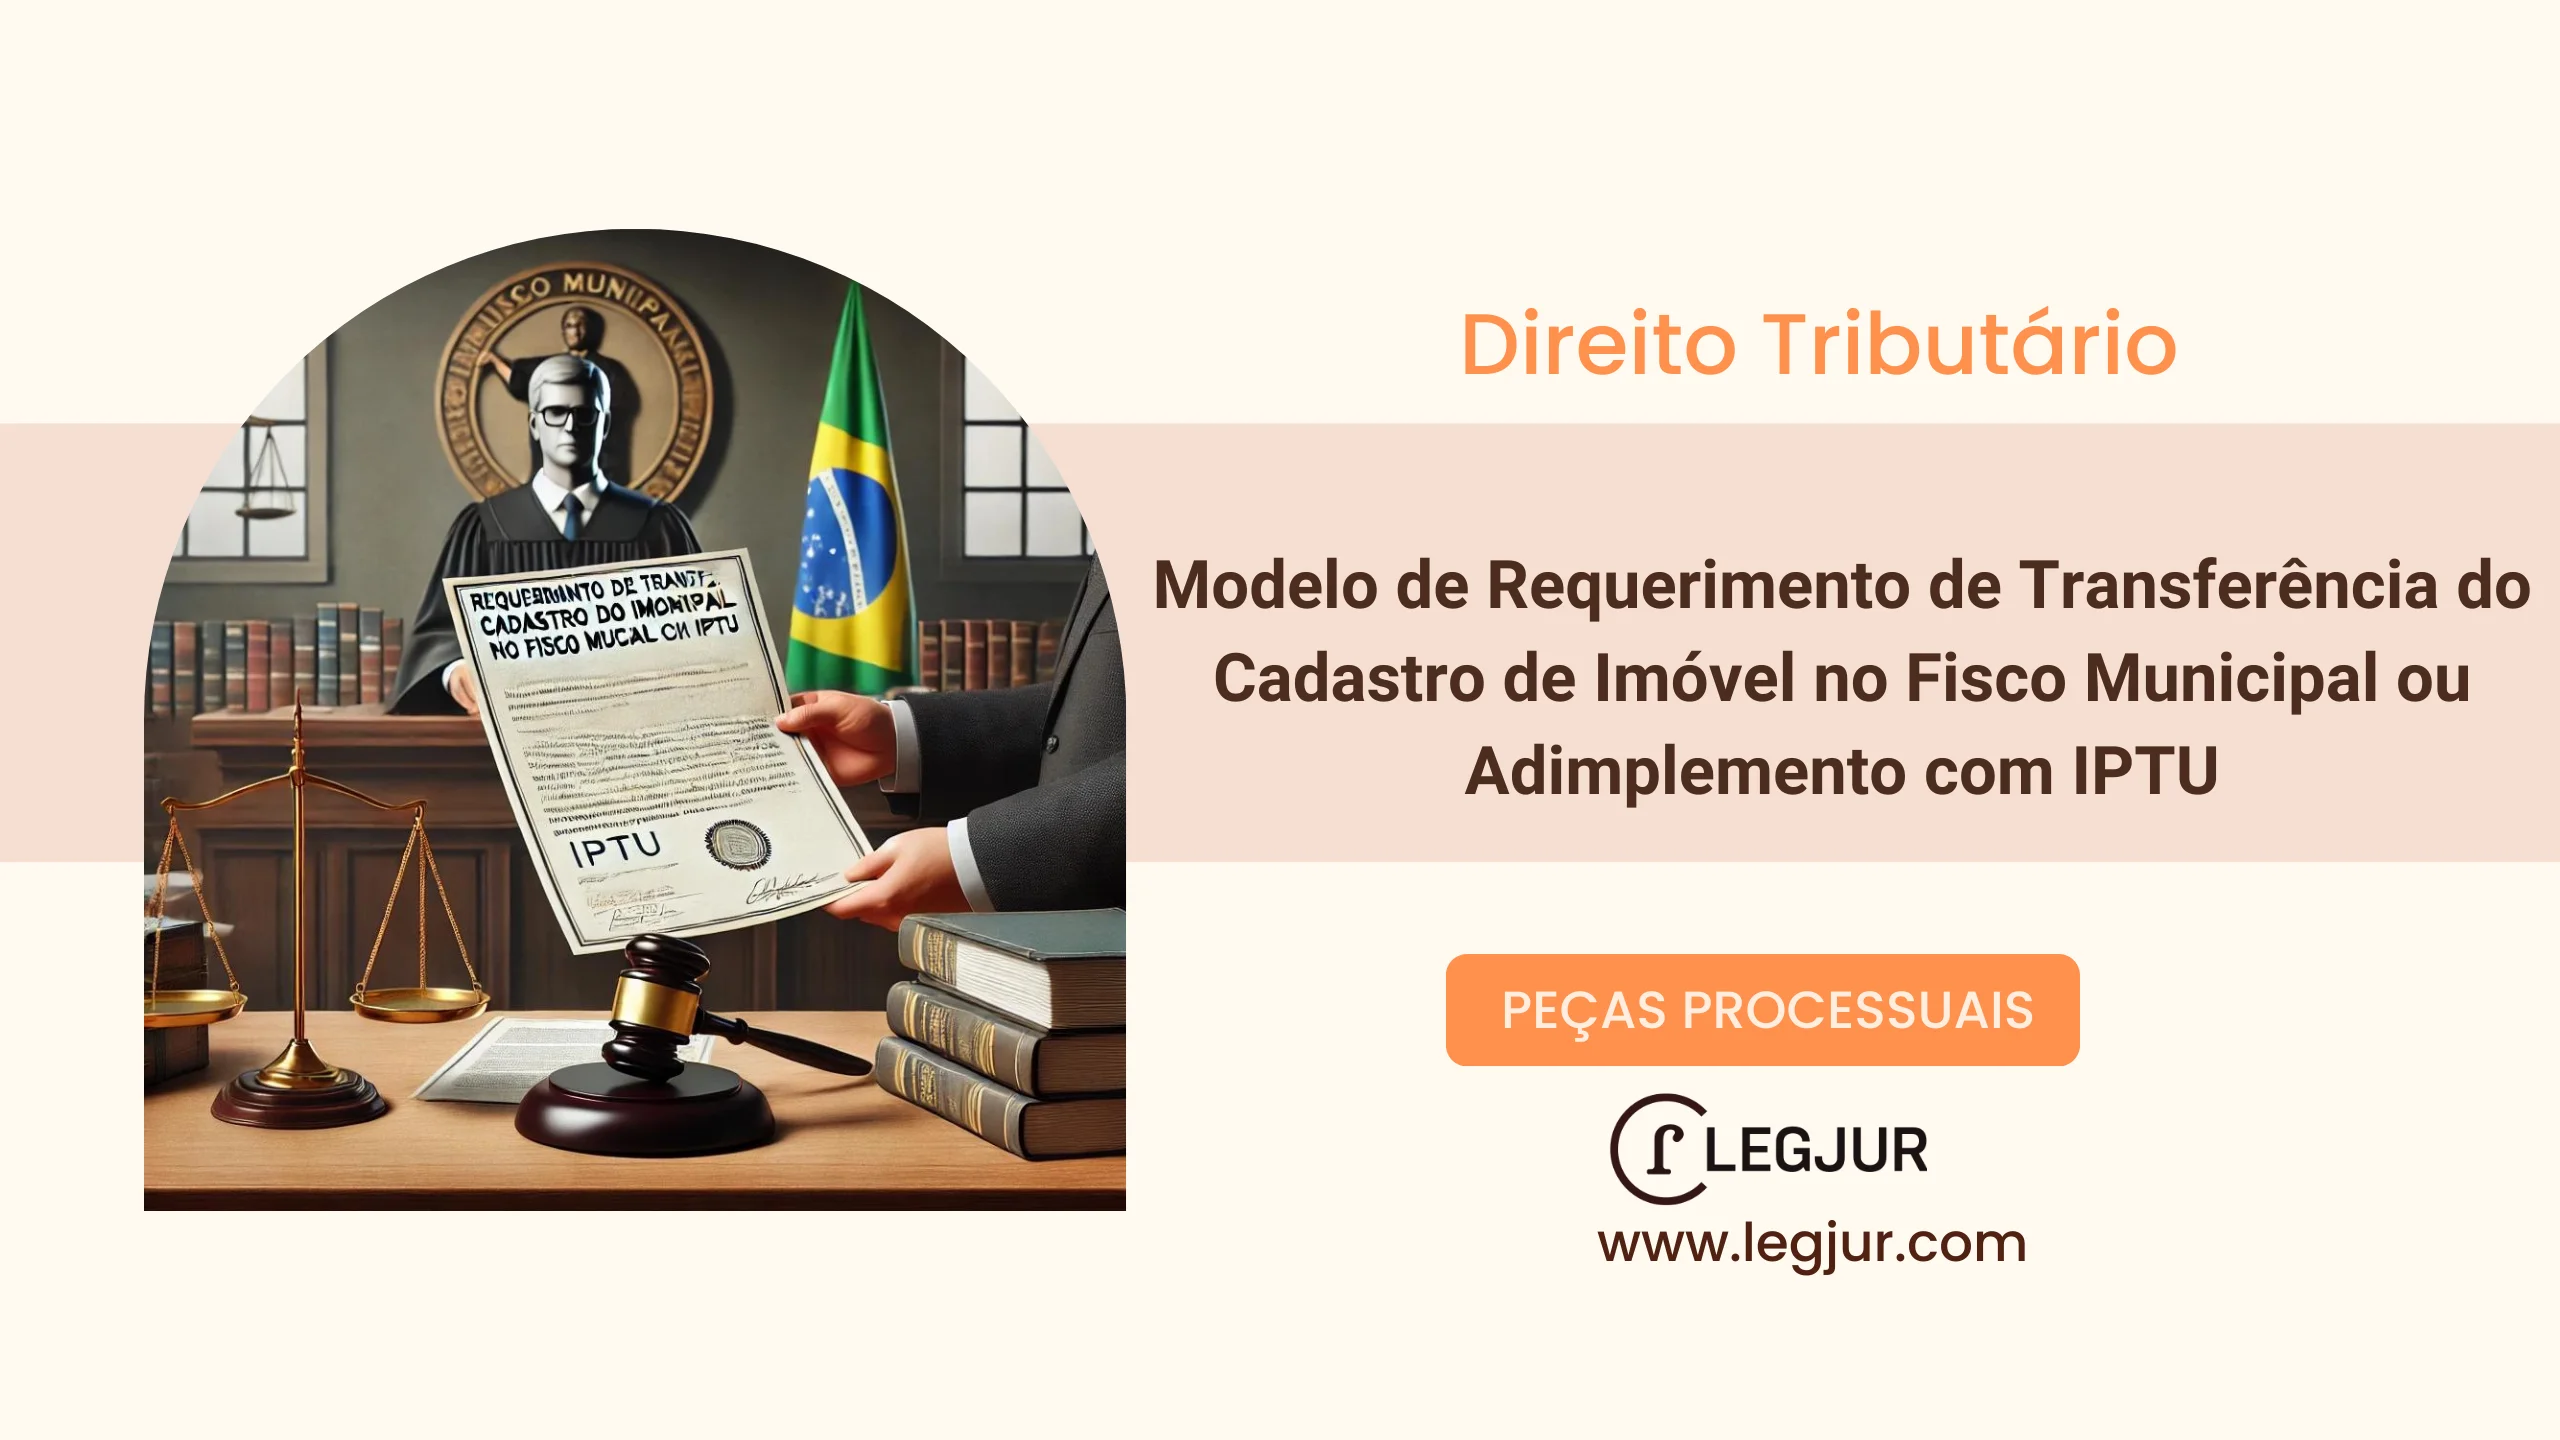 Modelo de Requerimento de Transferência do Cadastro de Imóvel no Fisco Municipal ou Adimplemento com IPTU